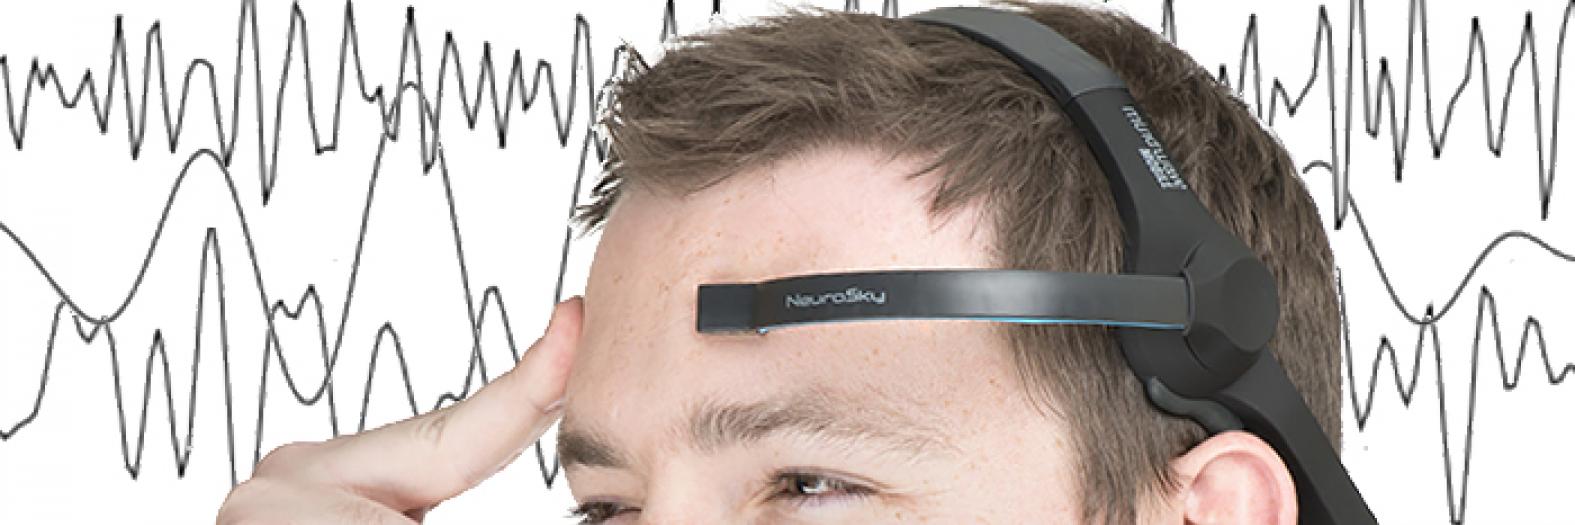 brainwaves-banner.jpg